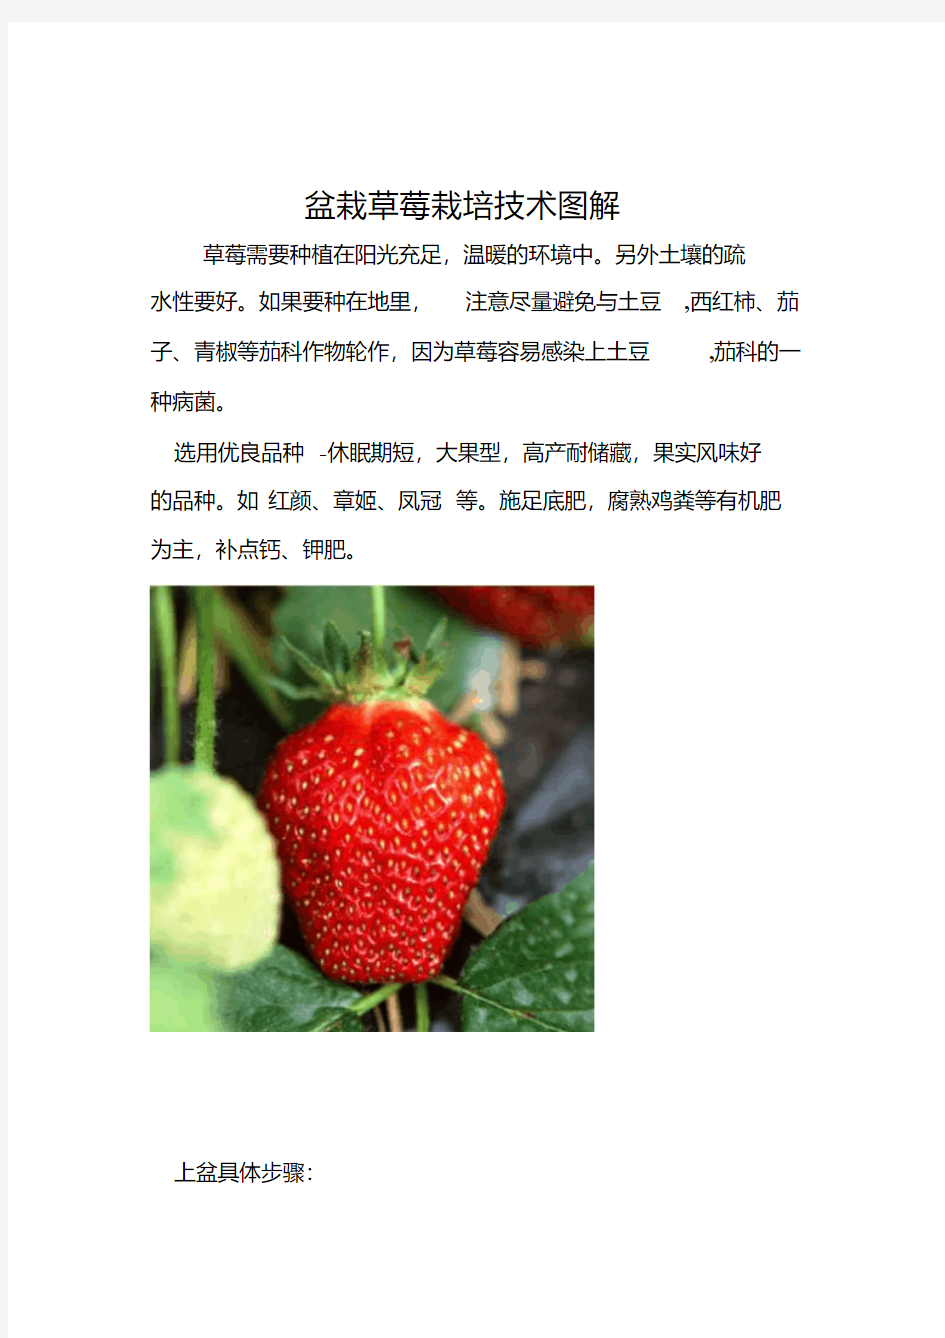 盆栽草莓栽培技术图解